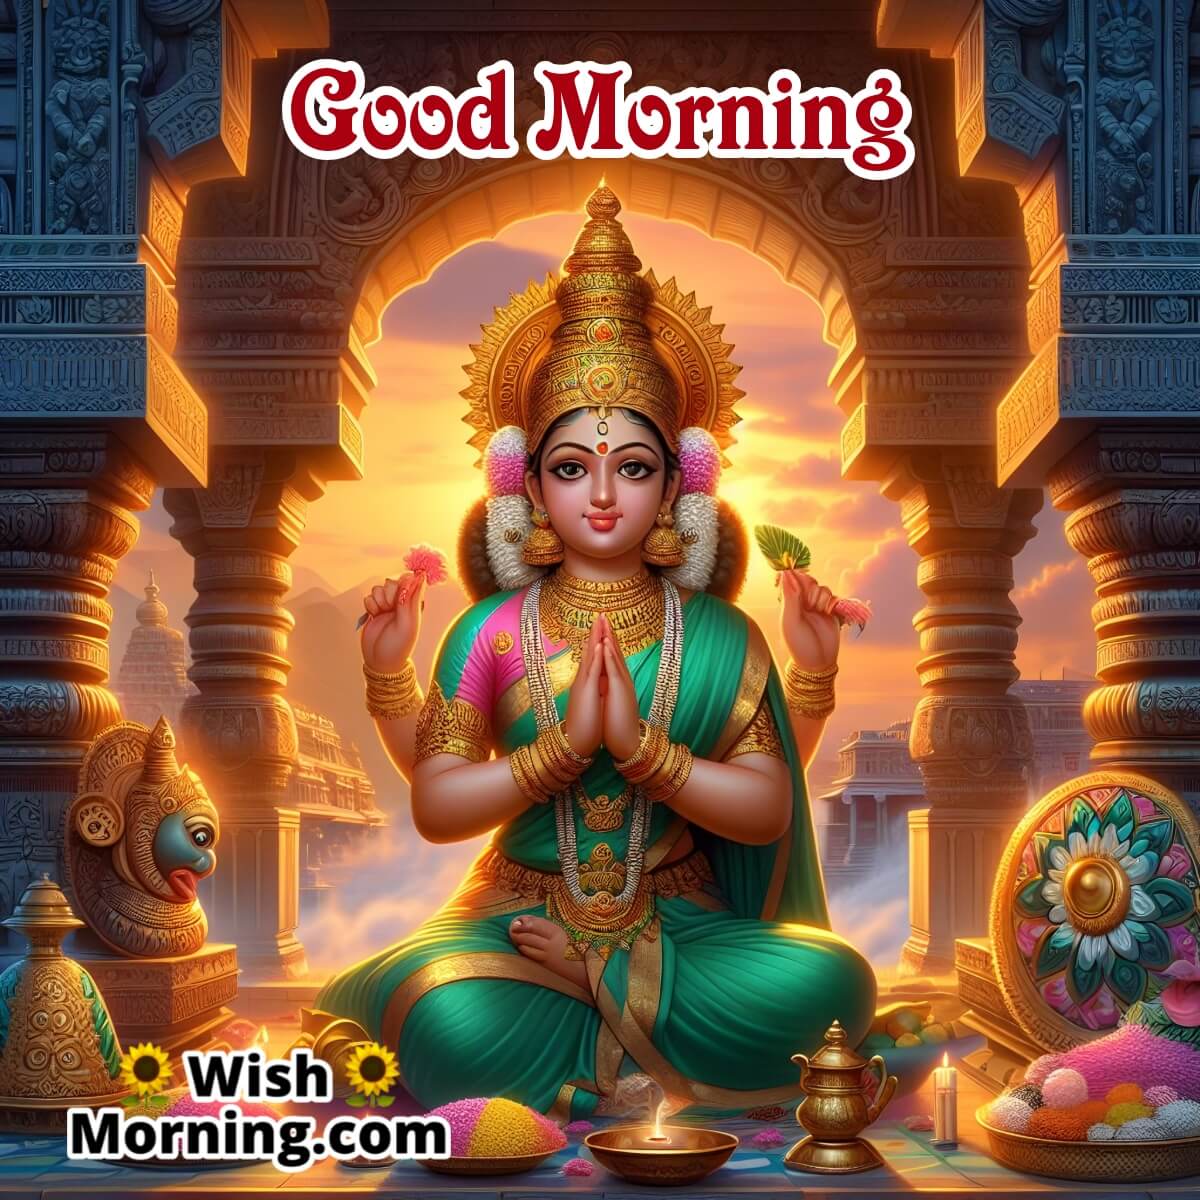 Enlightened Mornings With Kamakshi Devi